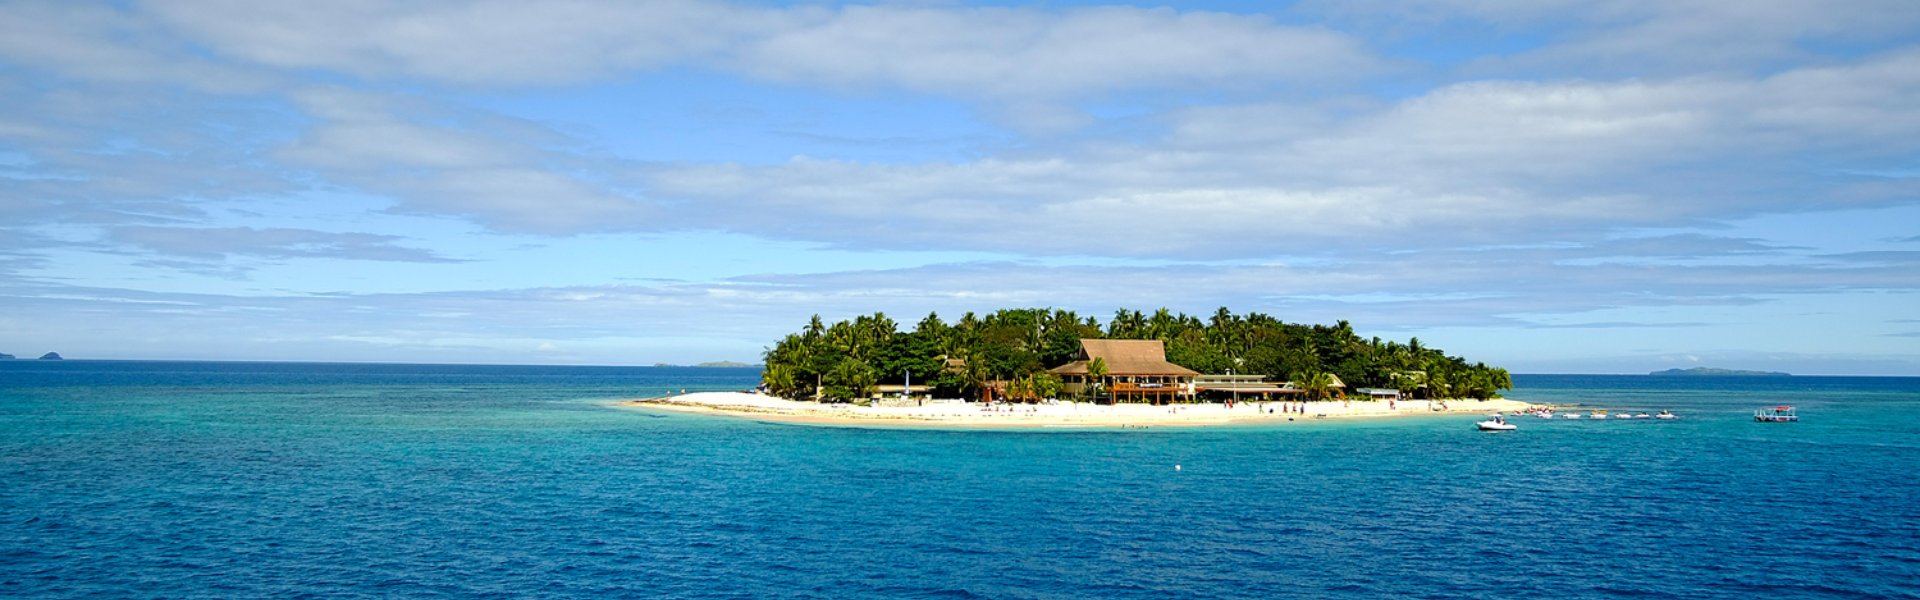 testata Viwa Island Resort